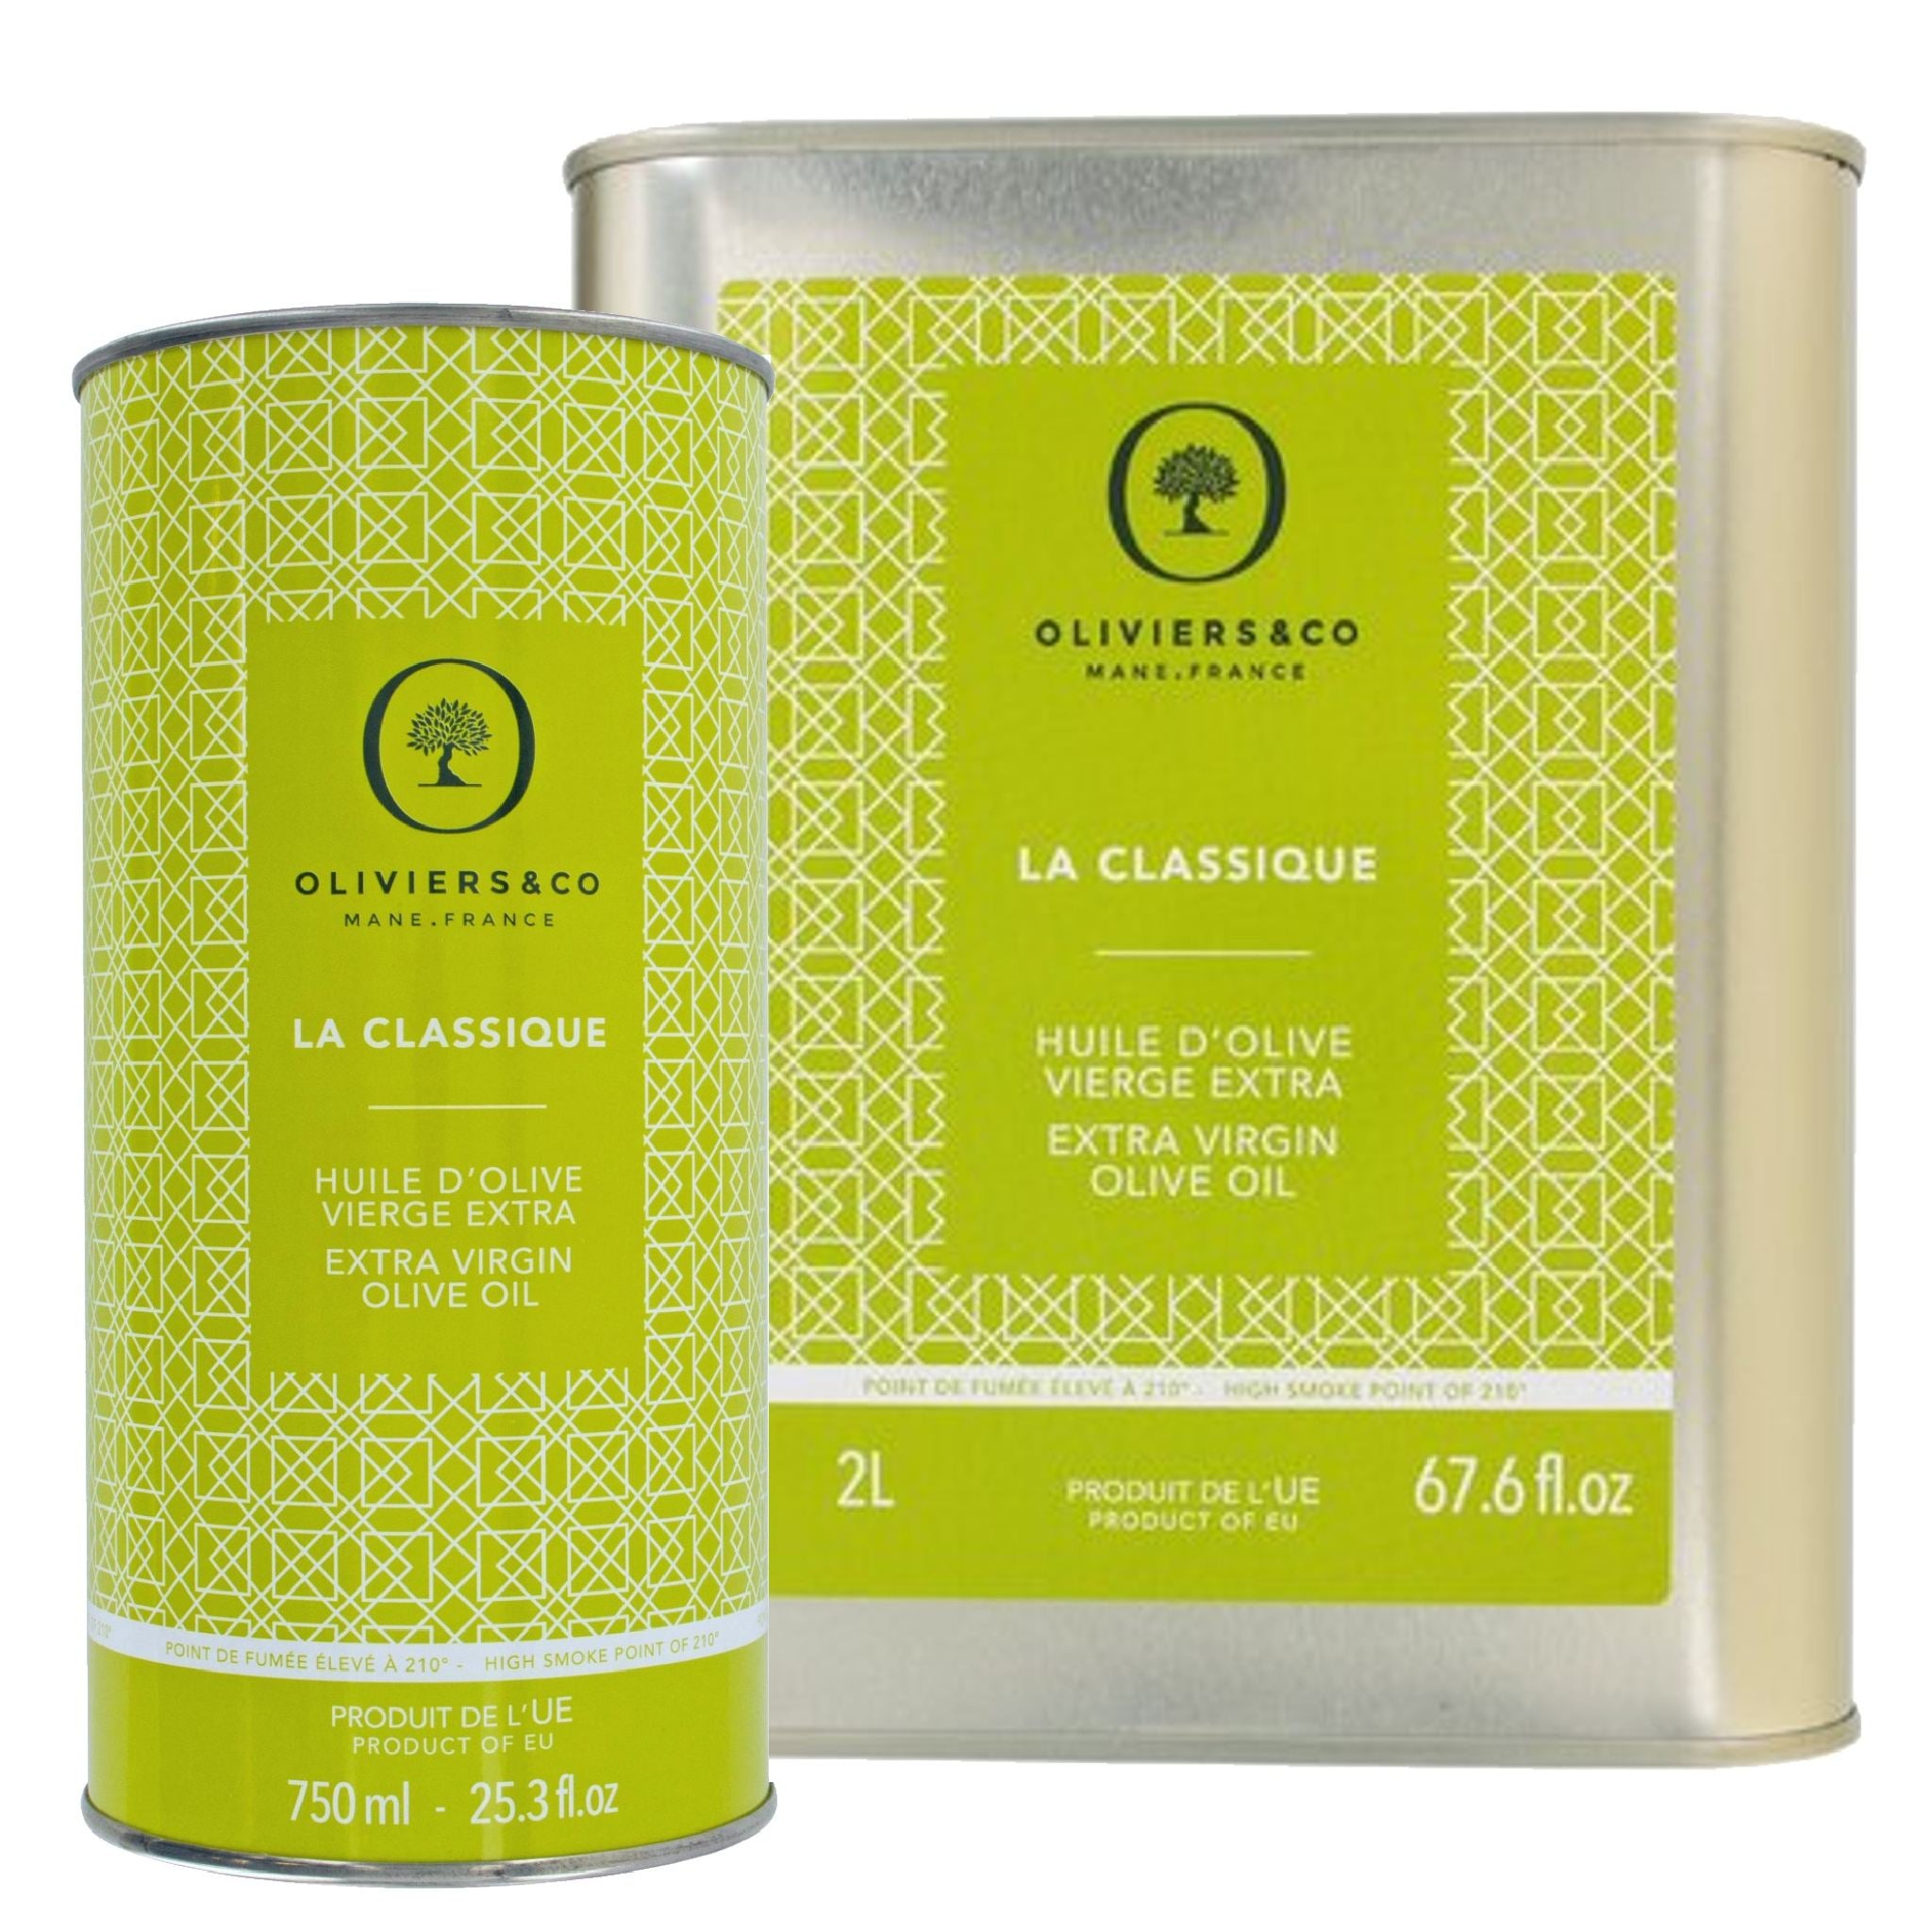 La Classique basis ekstra jomfru olivenolie 750ml og 2L fra Oliviers & Co